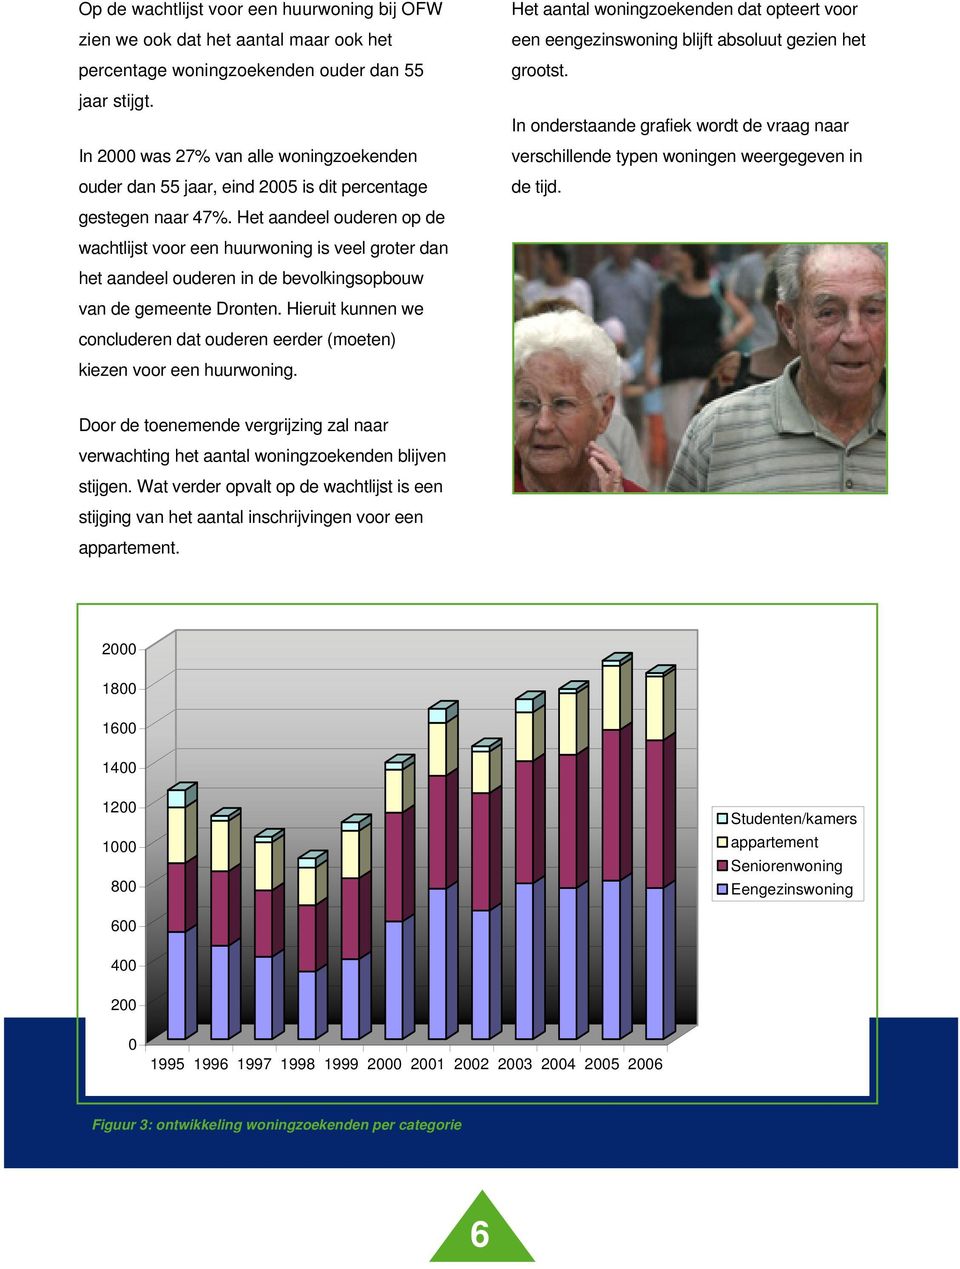 Het aandeel ouderen op de wachtlijst voor een huurwoning is veel groter dan het aandeel ouderen in de bevolkingsopbouw van de gemeente Dronten.